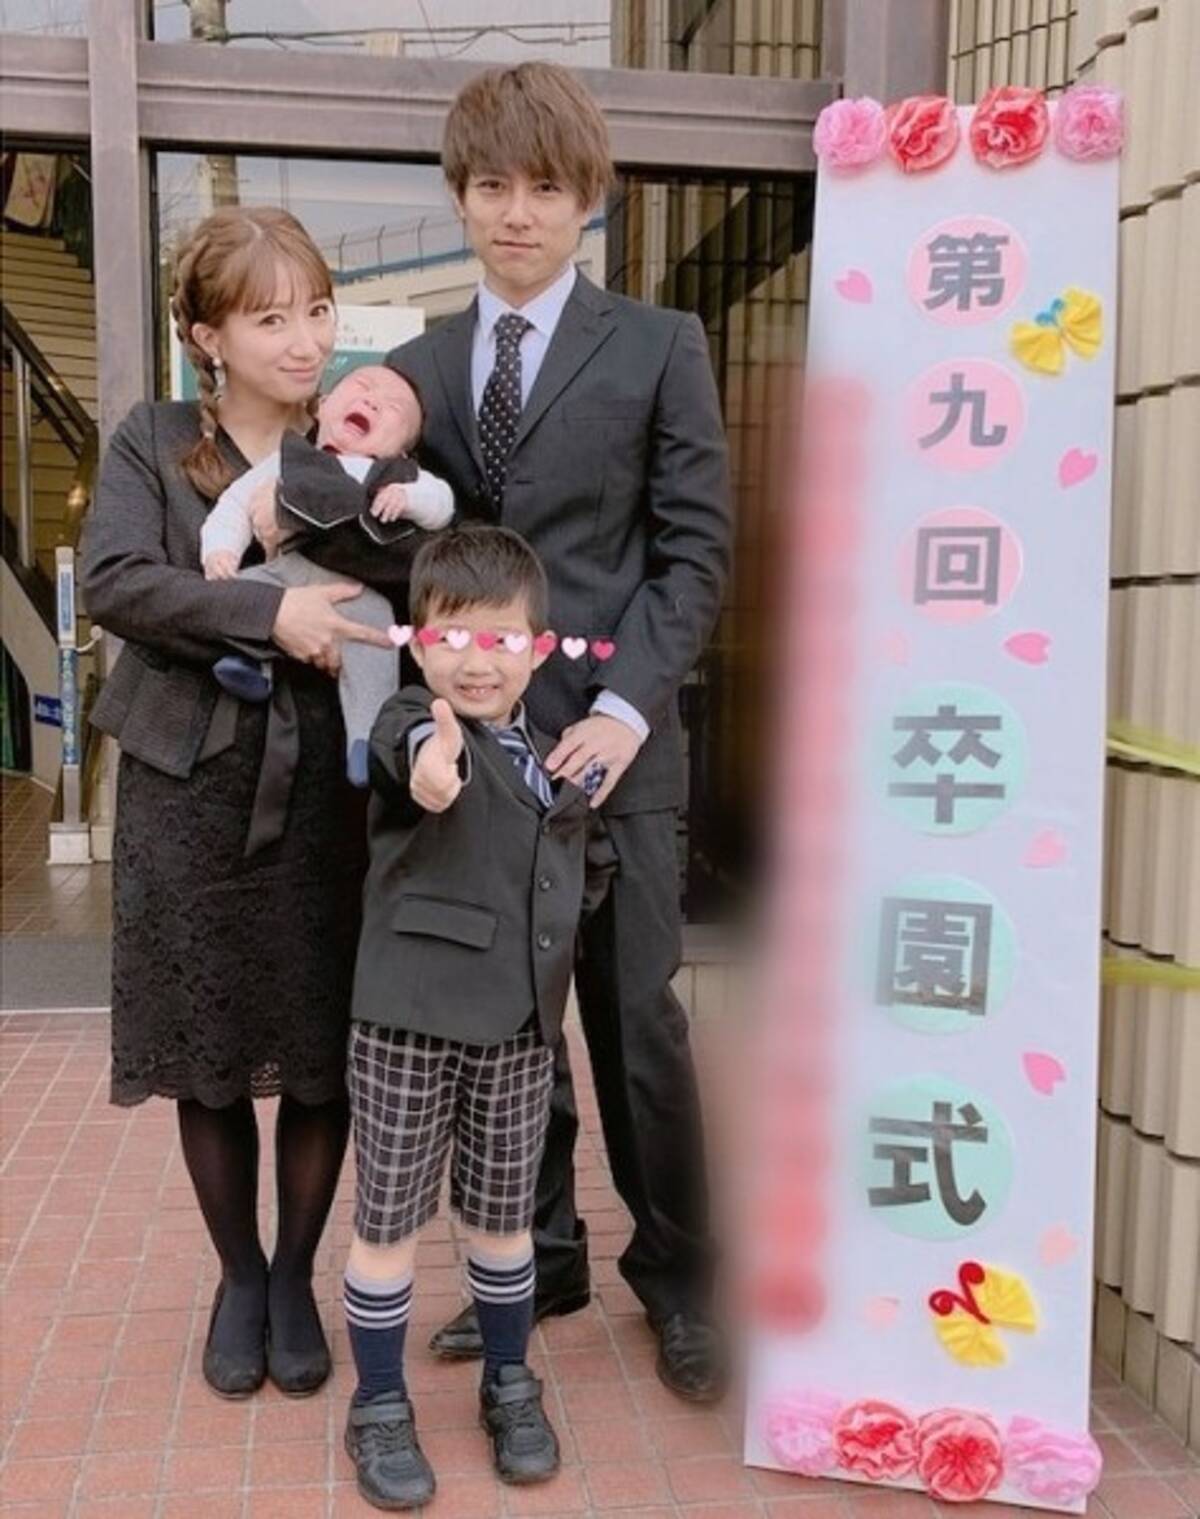 辻希美 次男の卒園式に夫婦で出席 服装がお葬式みたい 赤ちゃんは預けたら ツッコミ殺到 19年3月18日 エキサイトニュース